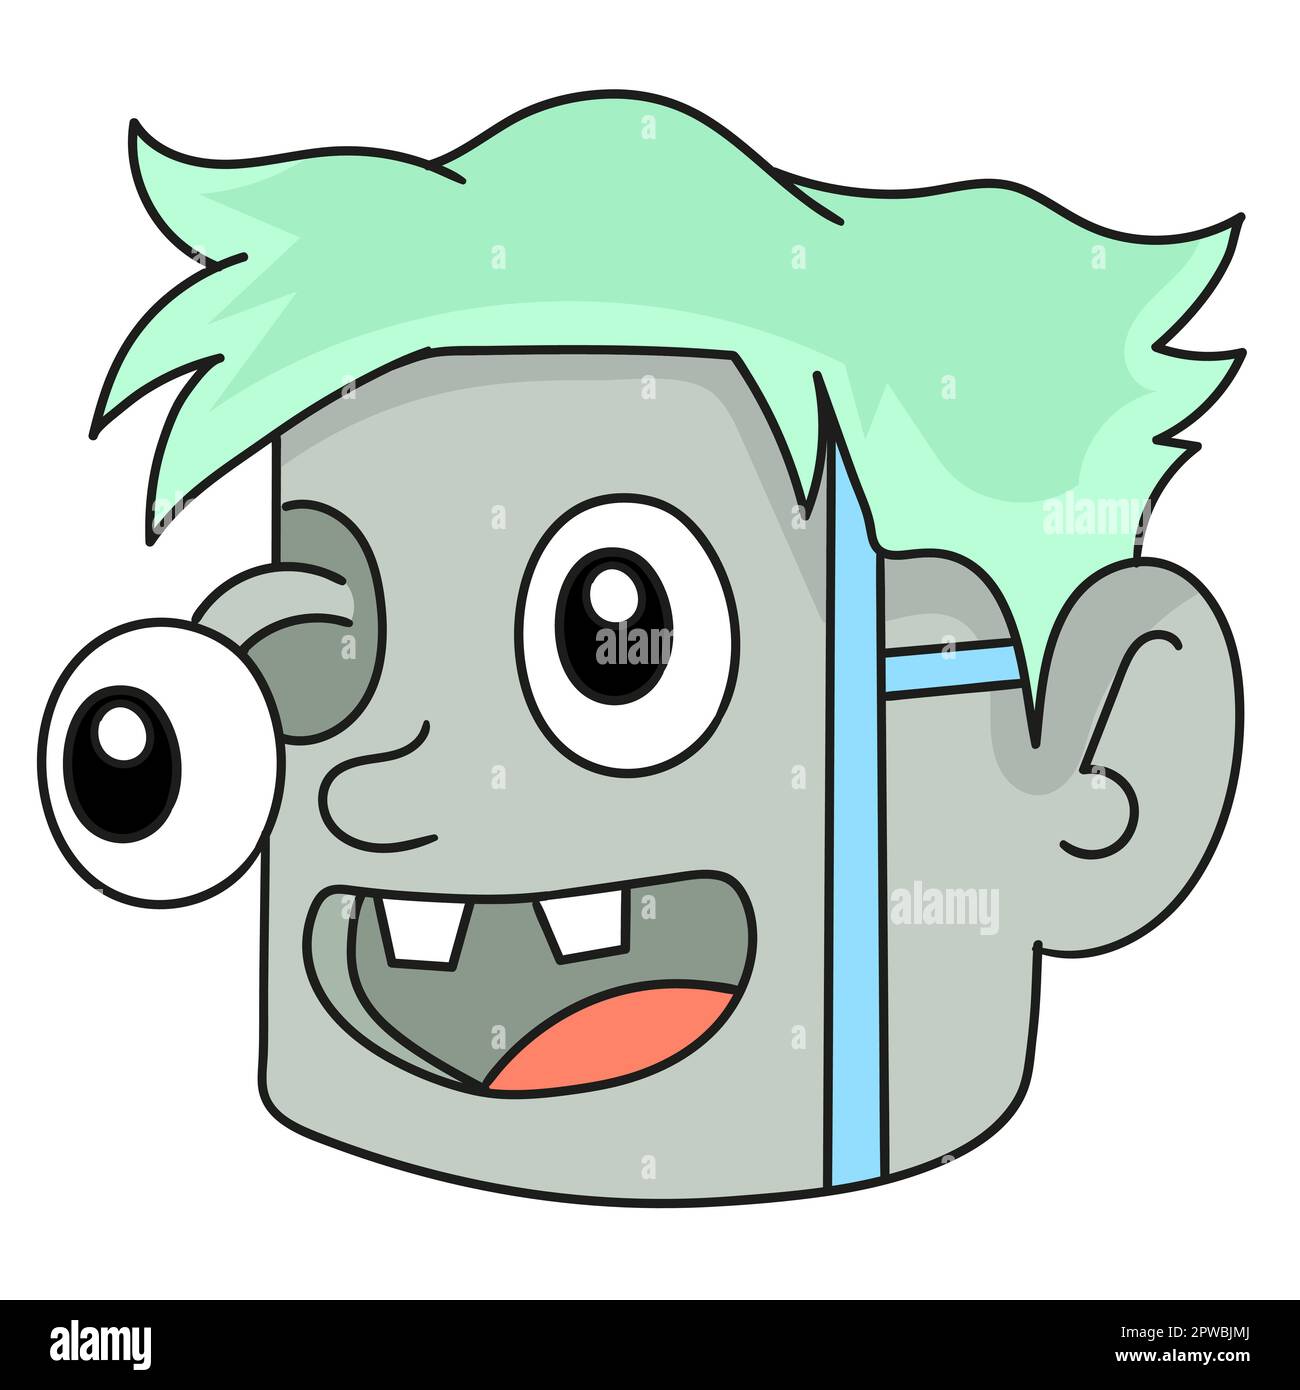 frankenstein's head emoticon. doodle icon image Stock Vector